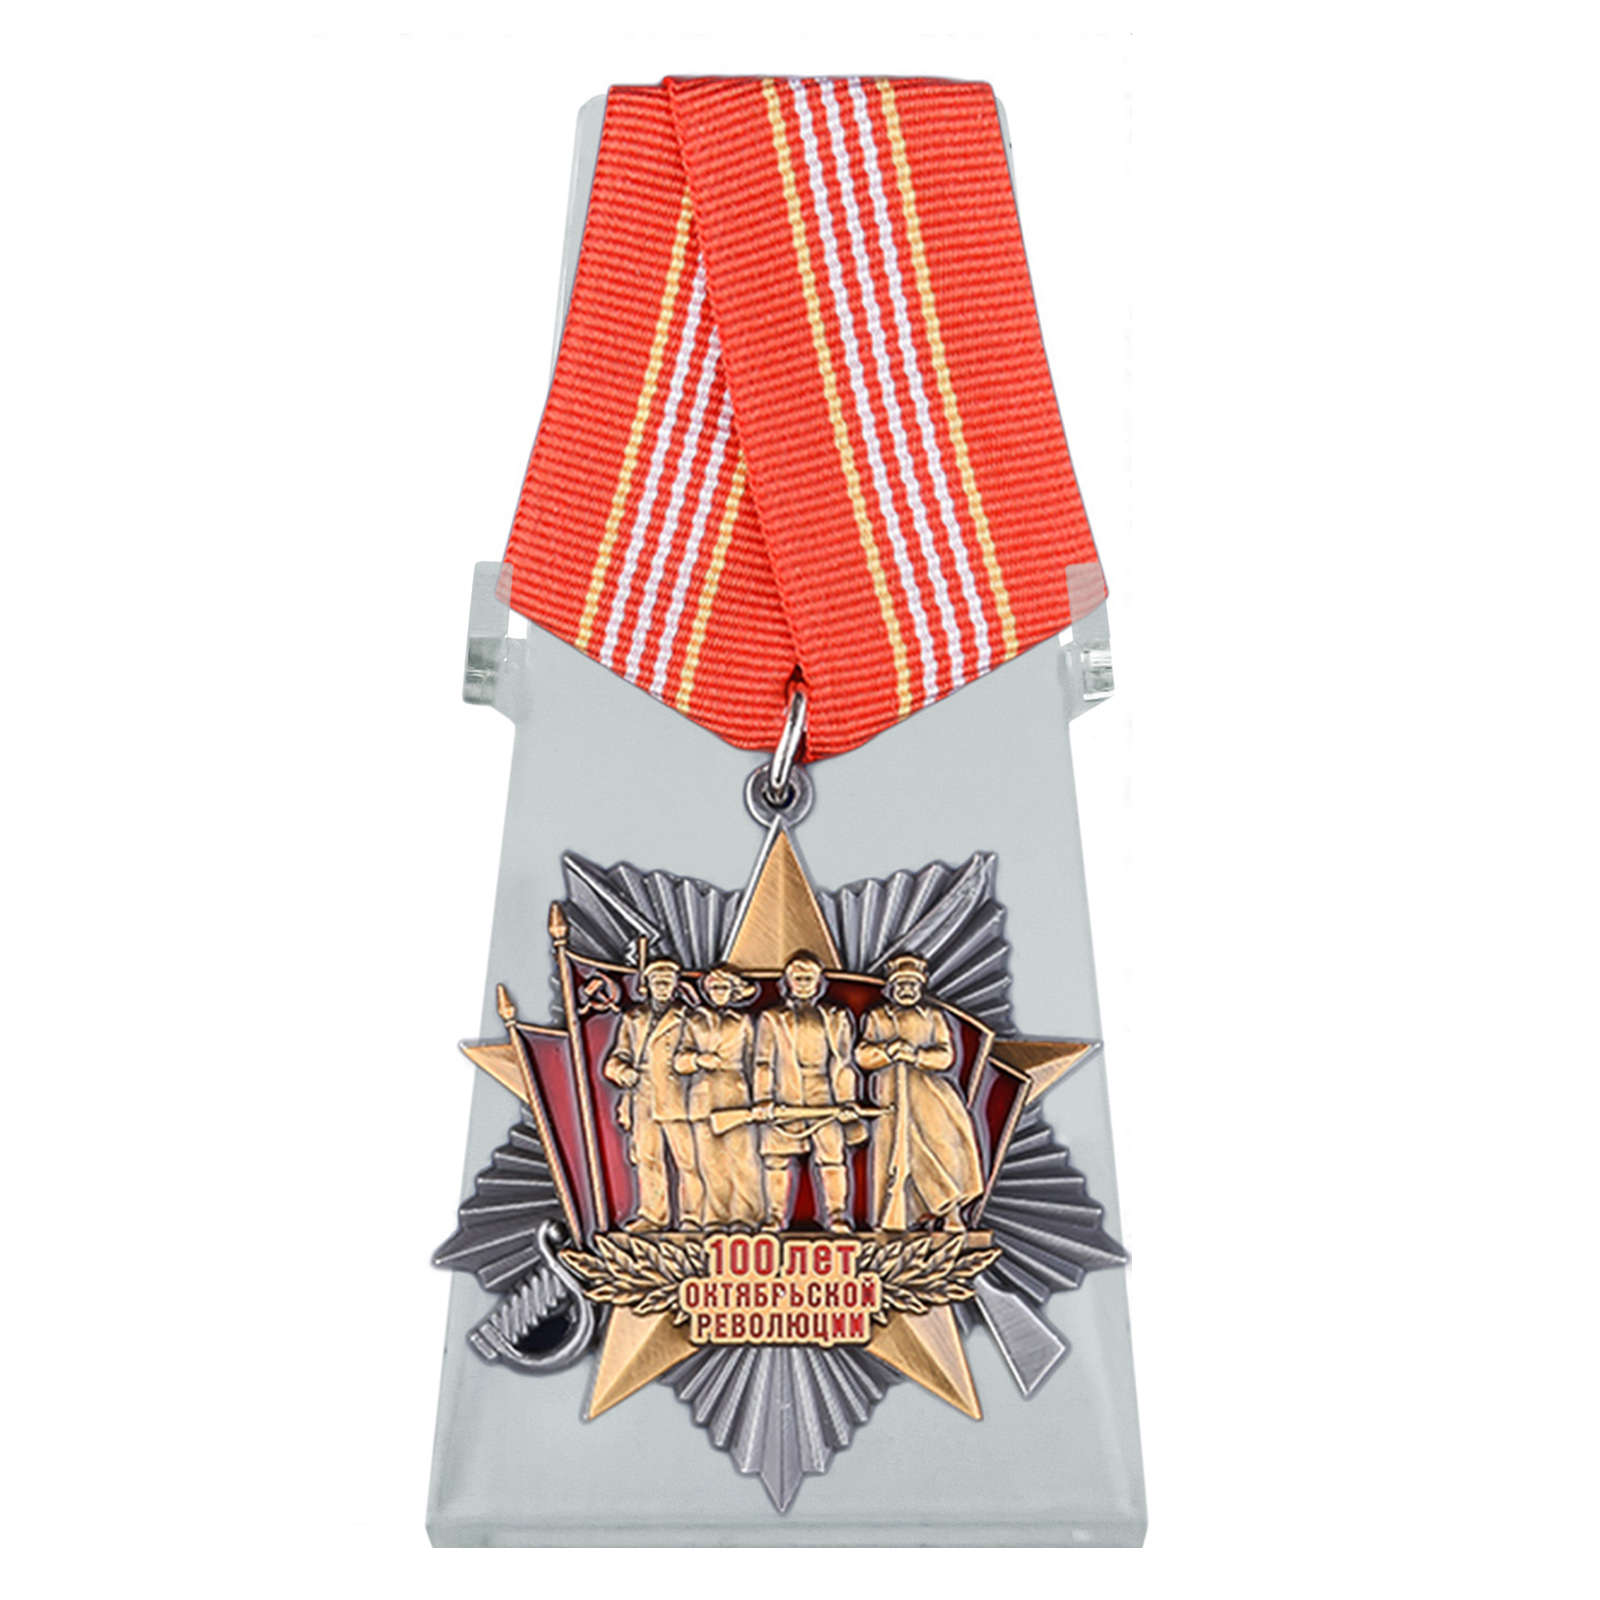 Юбилейная медаль "100 лет Октябрьской революции" на подставке